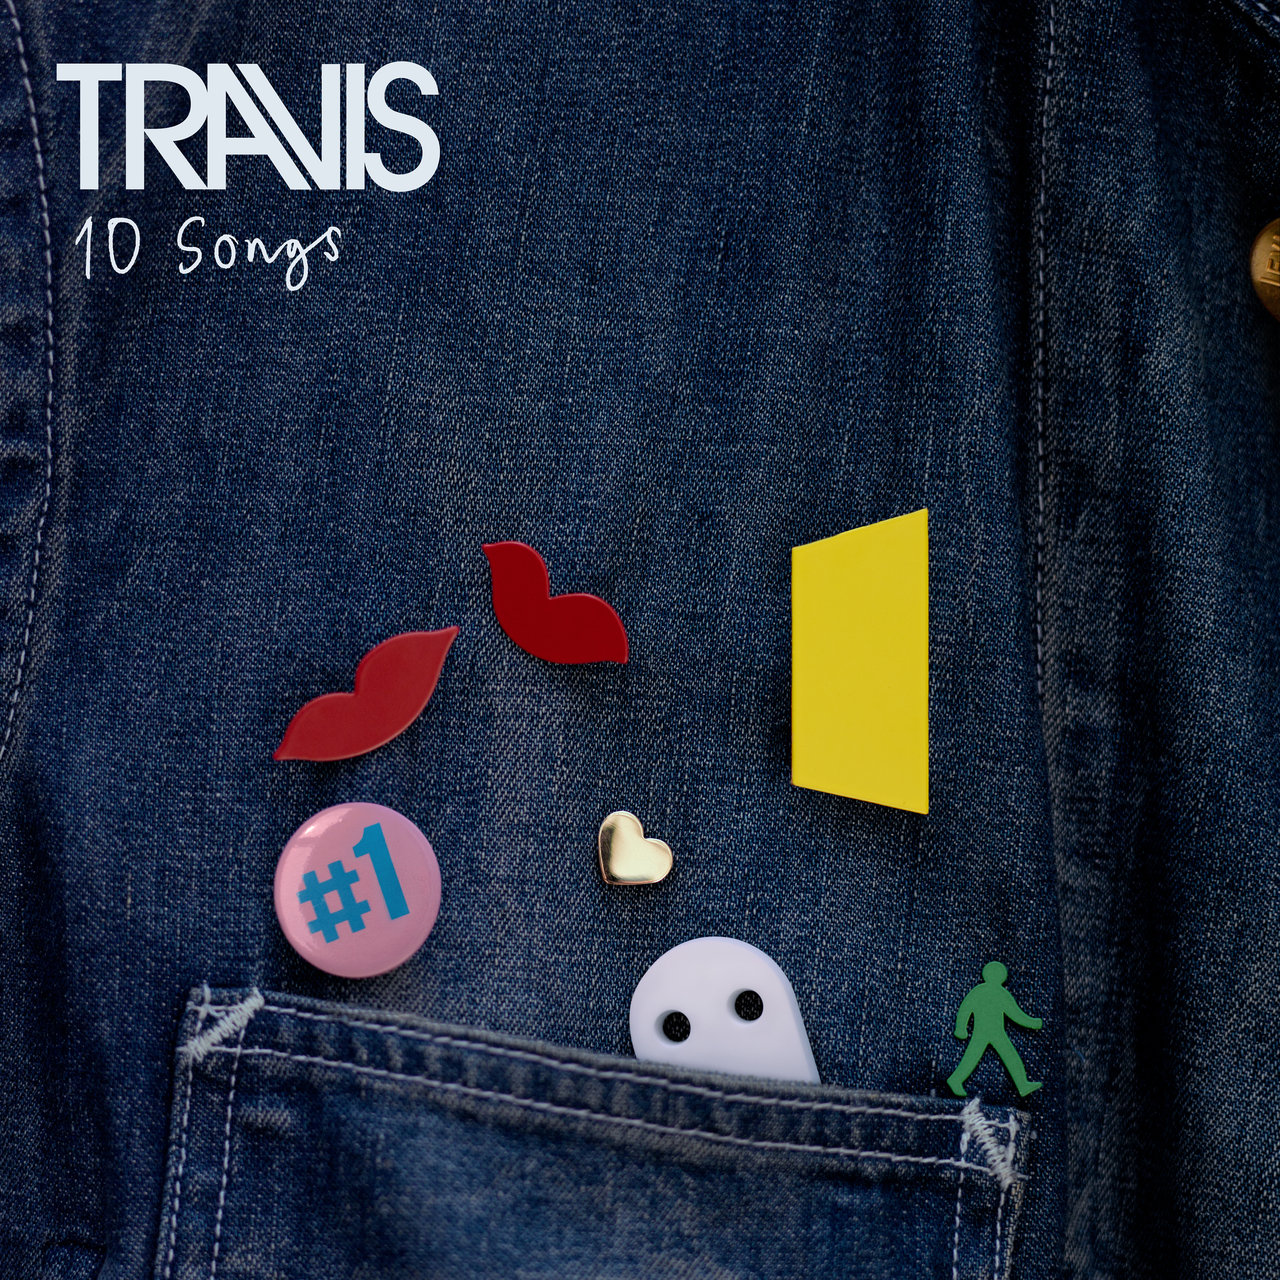 Travis - 10 Songs (2020) [FLAC 24bit/48kHz]